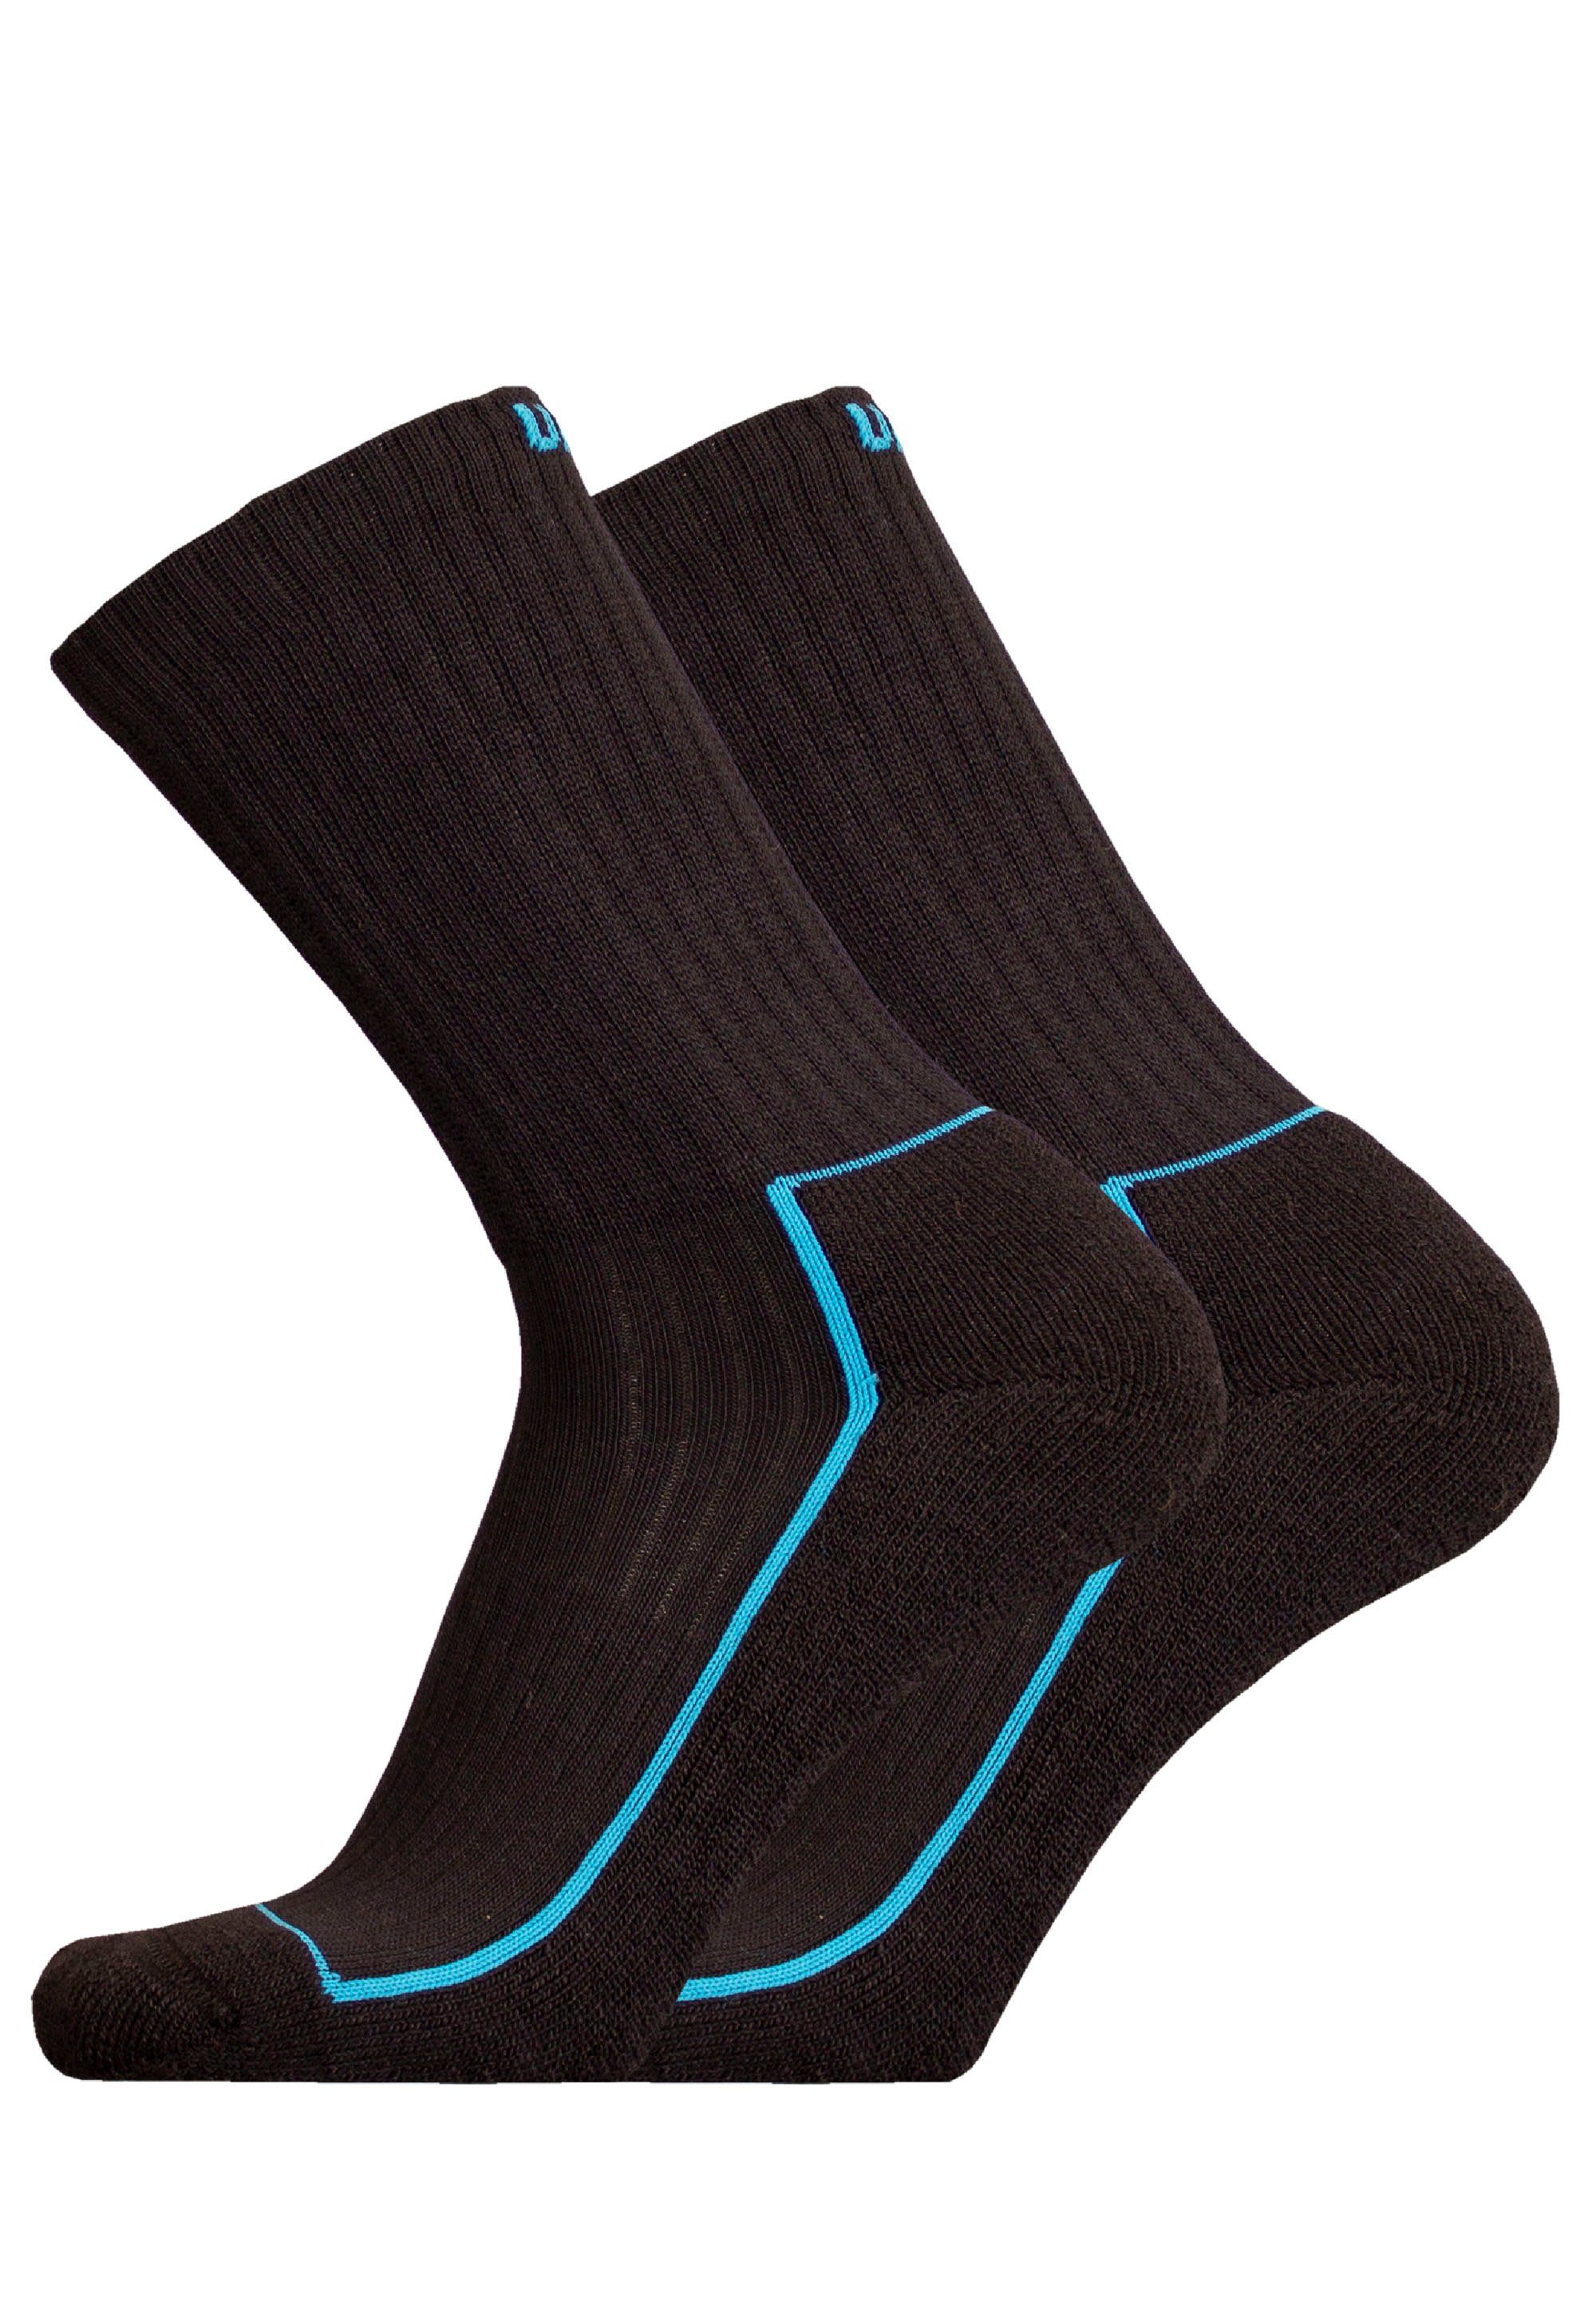 UphillSport Socken SAANA 2er Pack (2-Paar) mit speziell geformter Ferse schwarz-blau